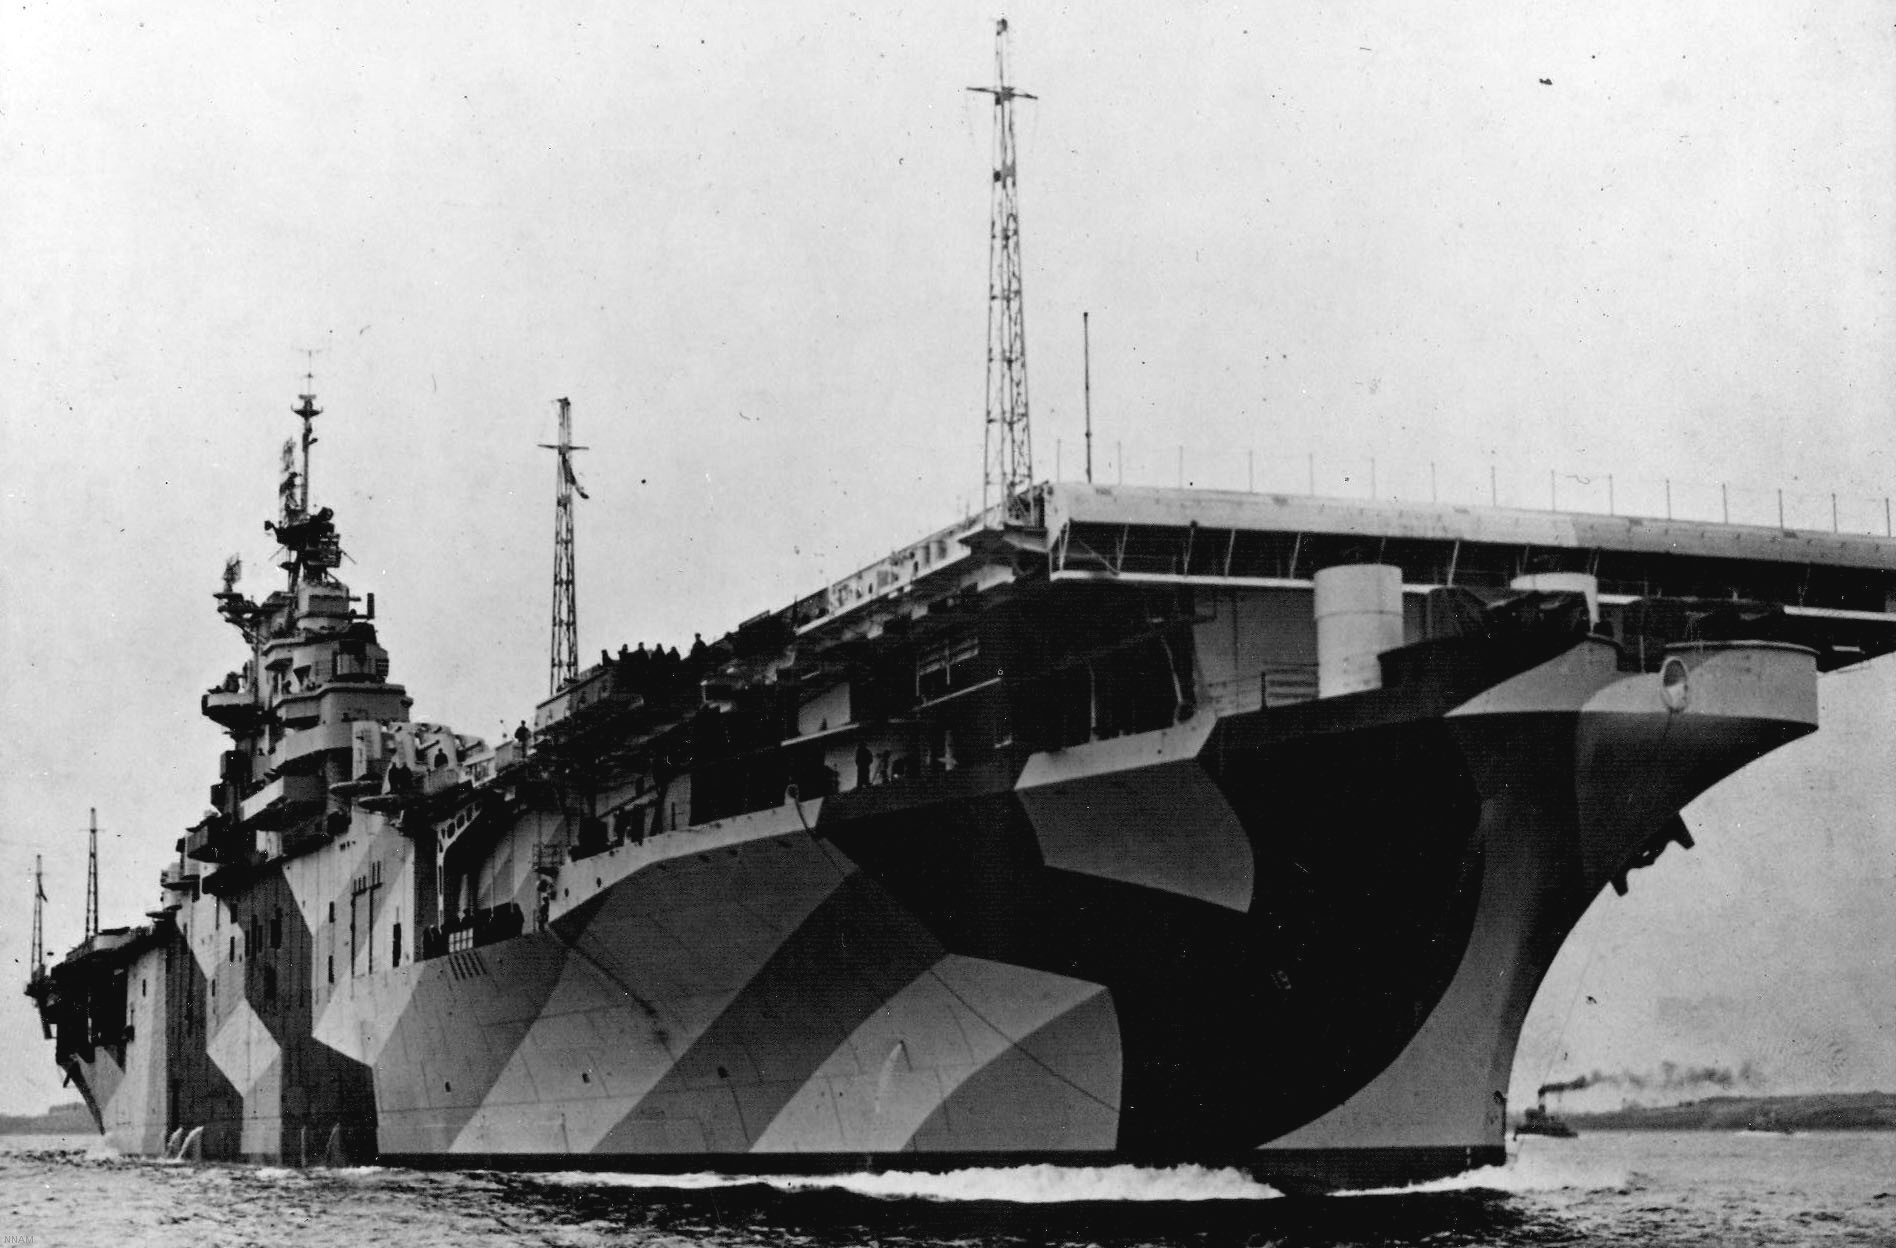 cva-19 uss hancock cv essex class aircraft carrier 54